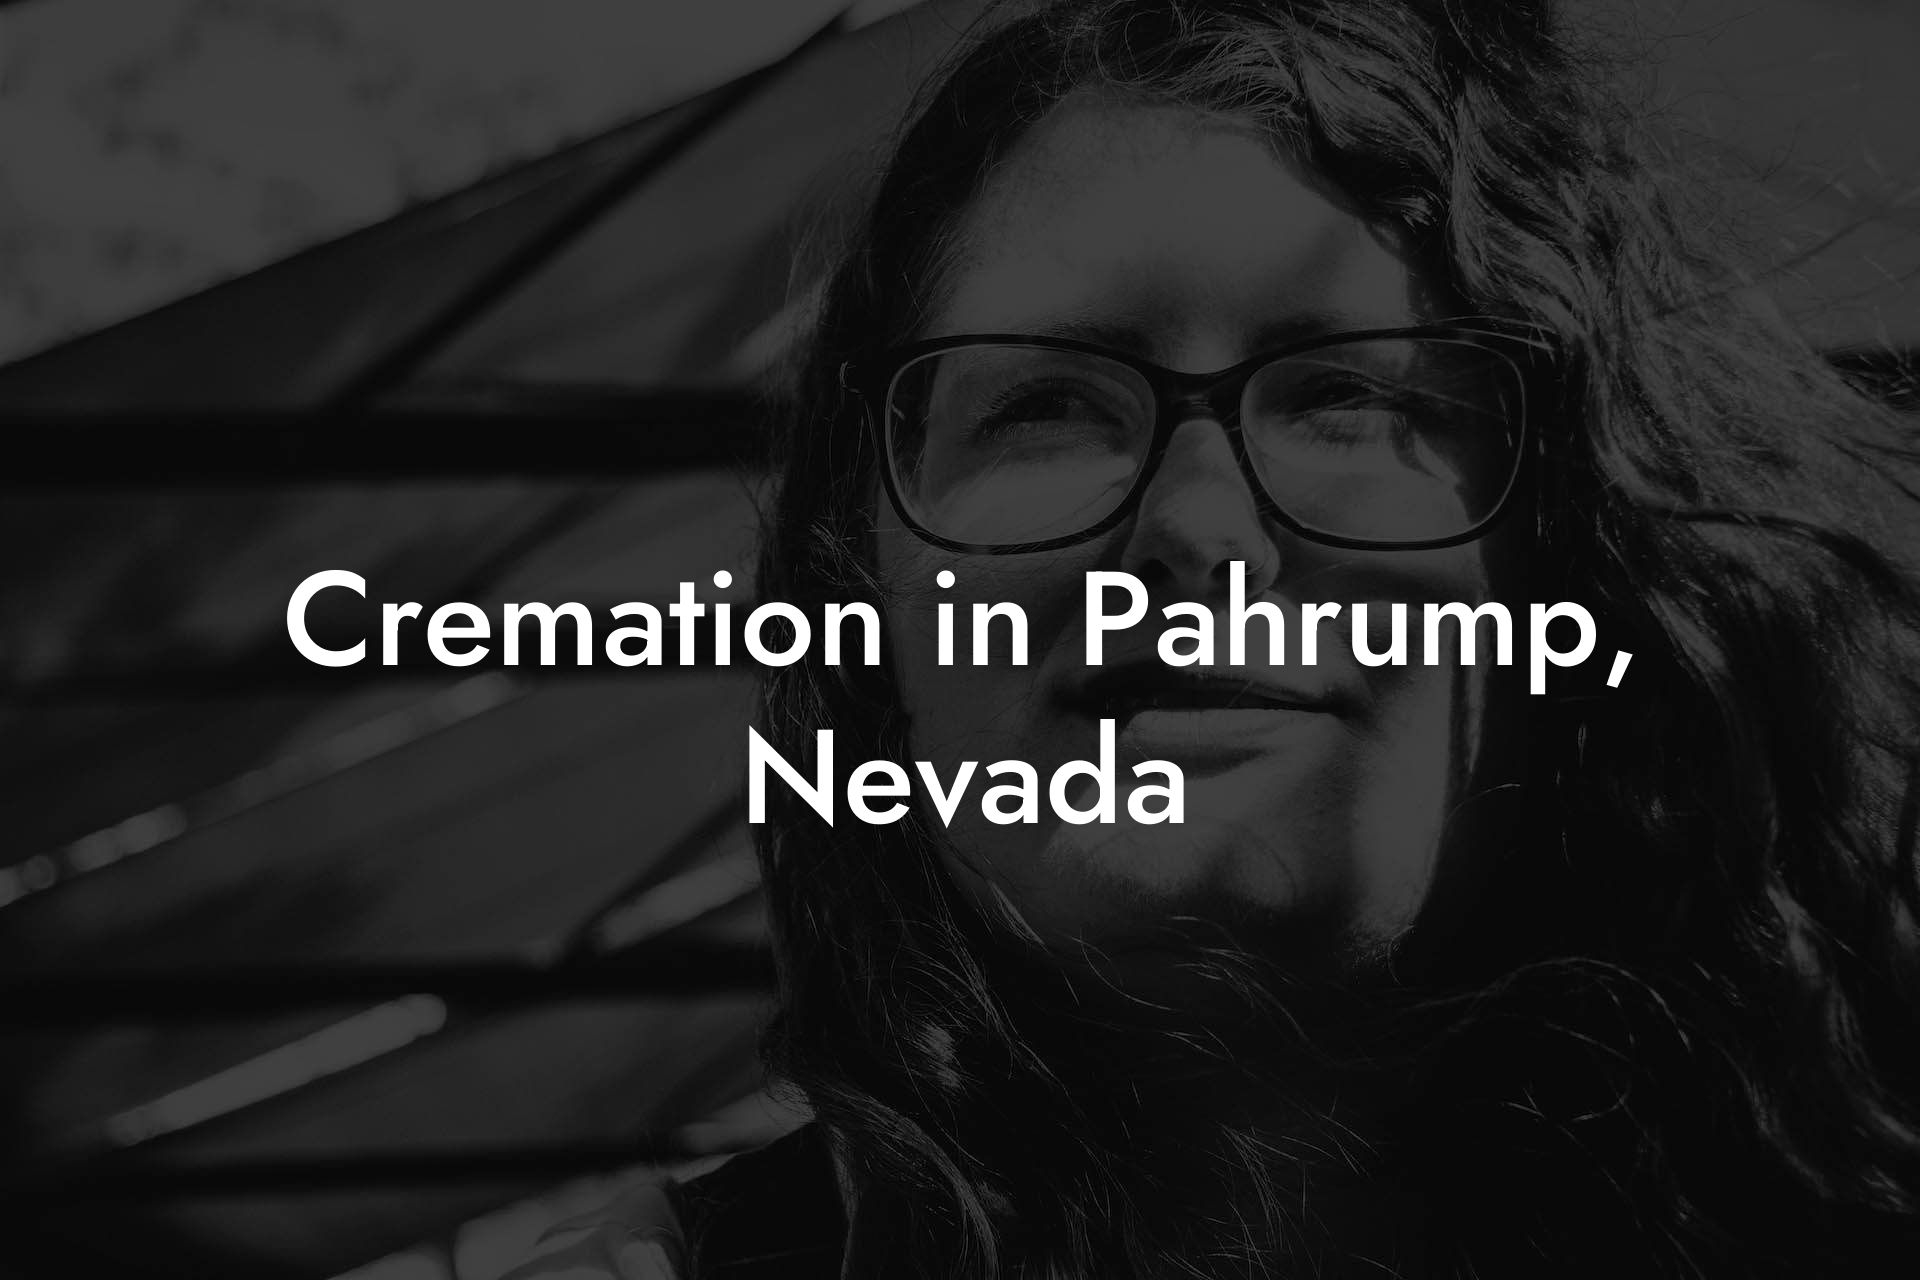 Cremation in Pahrump, Nevada